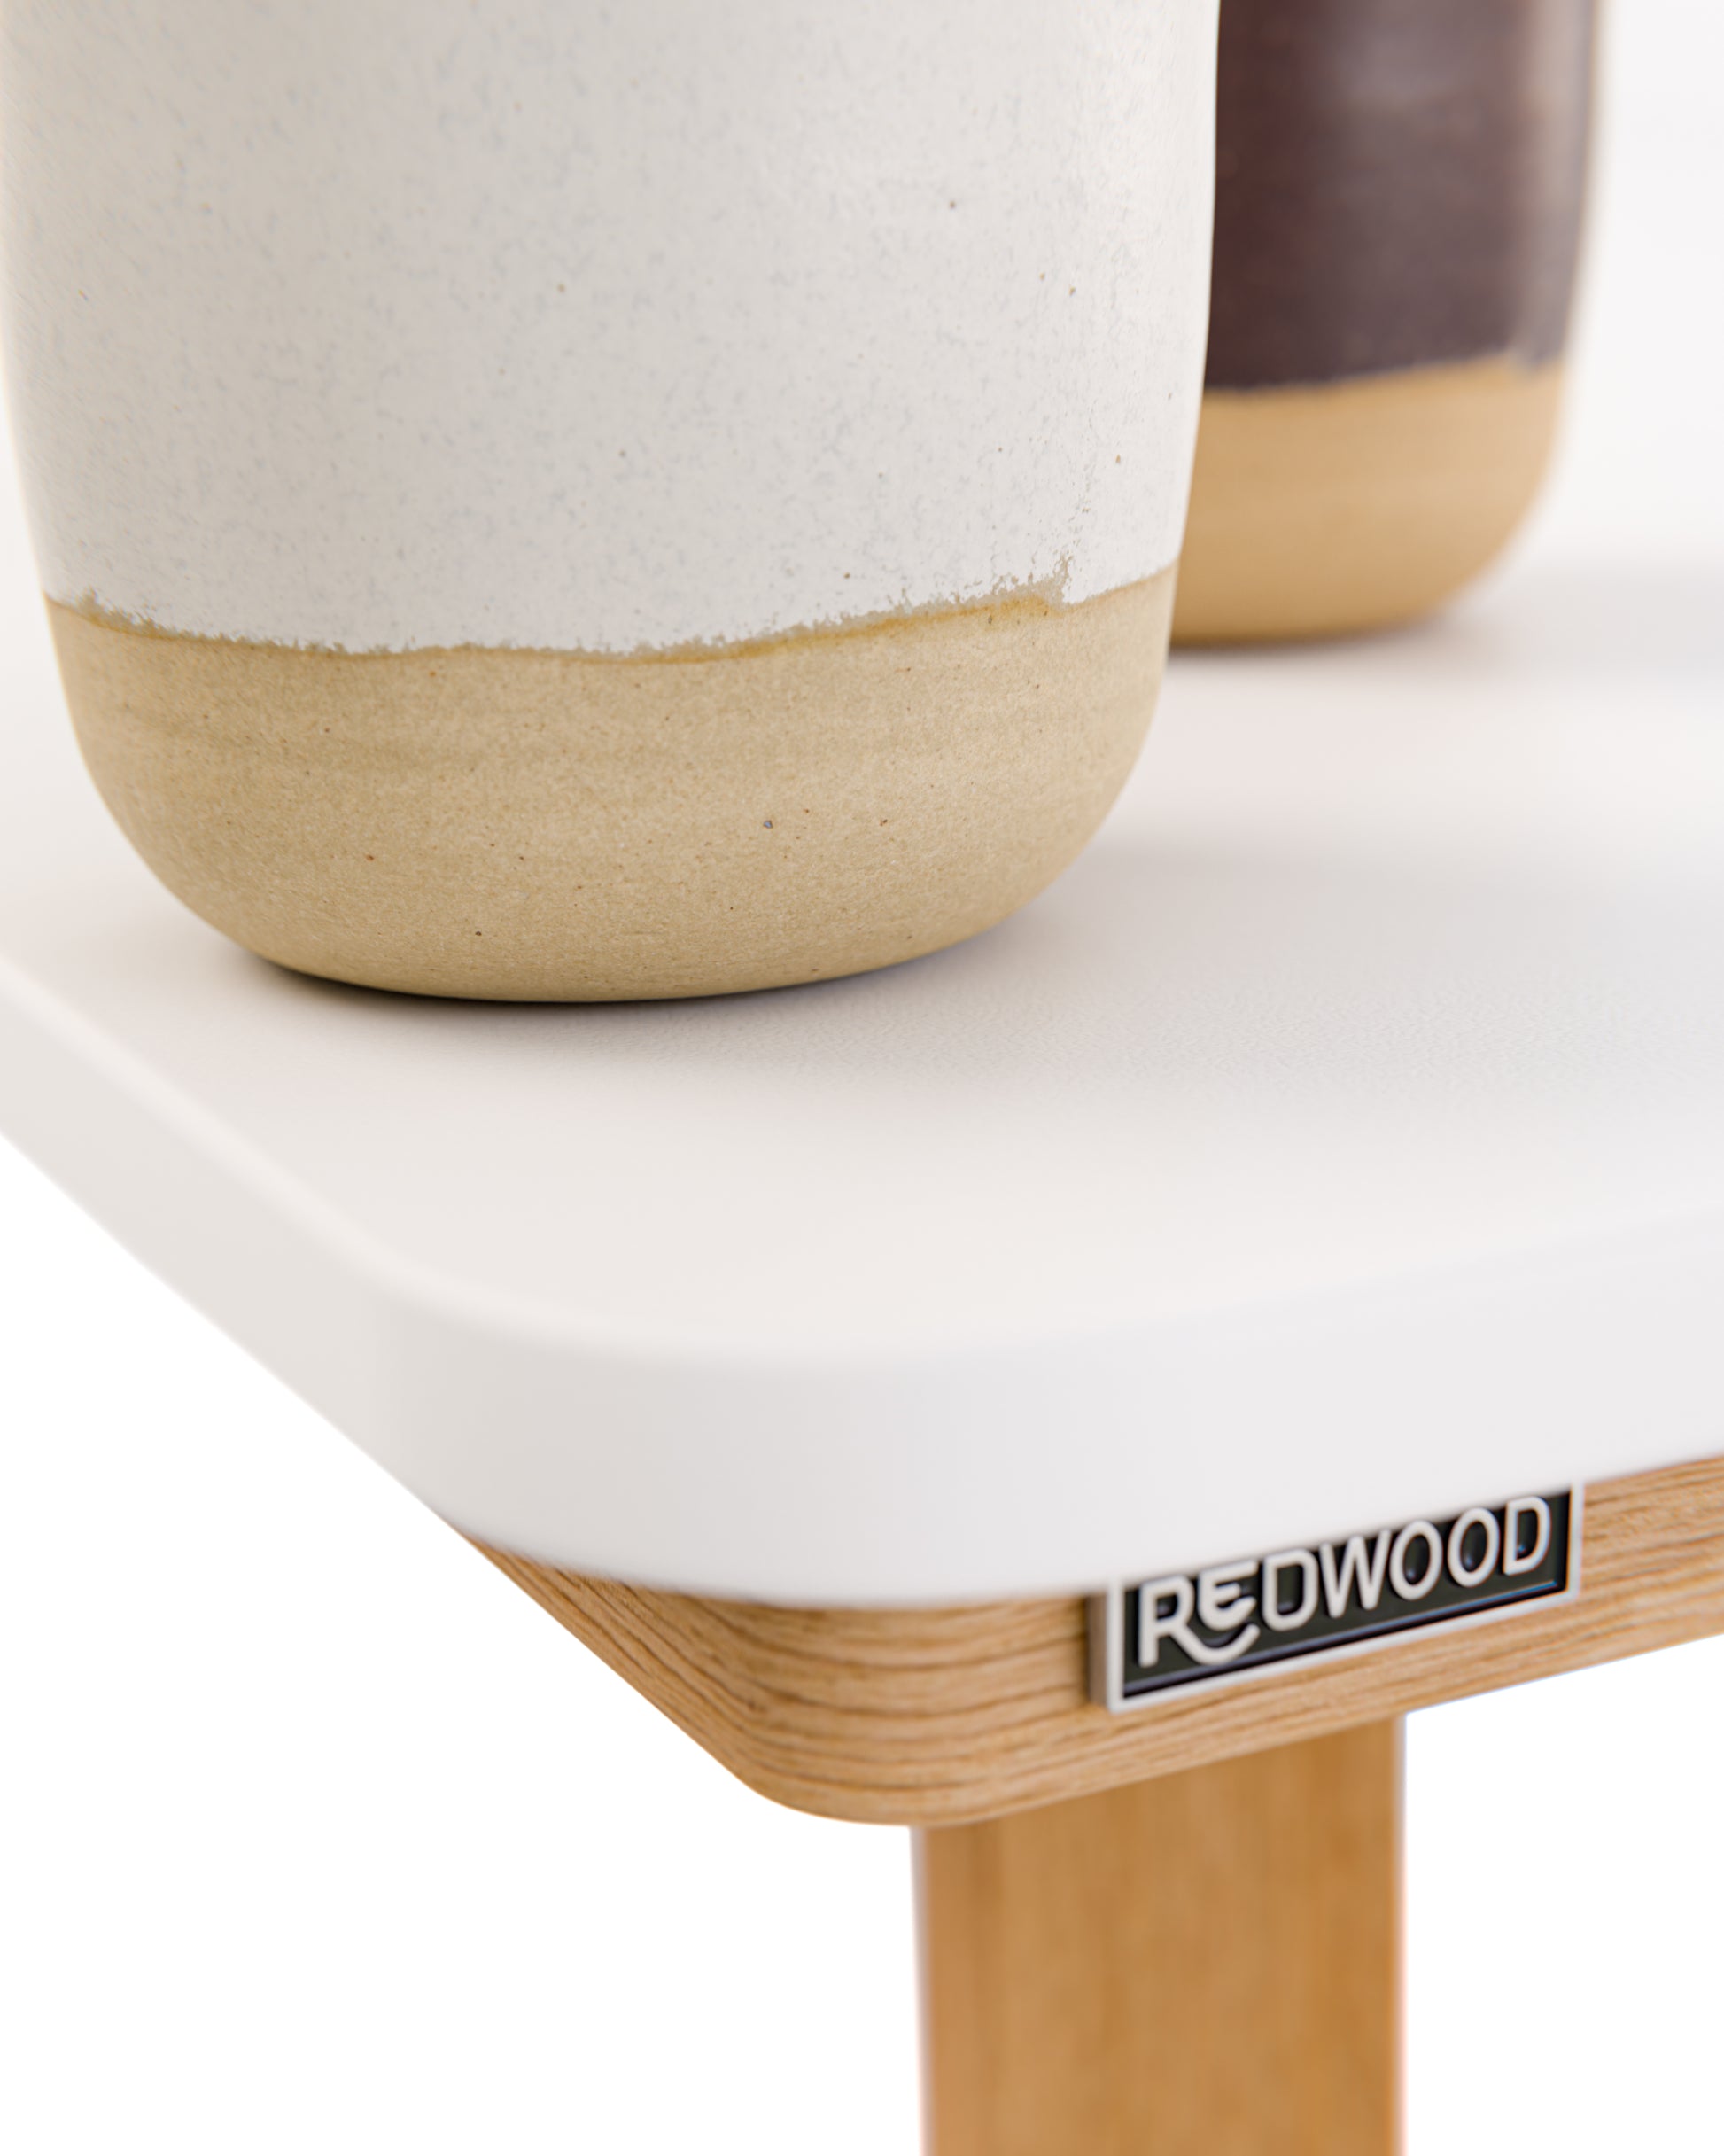 Esstisch in Eiche und weißer Tischplatte:Kompaktplatte im Detail:Man muss genau hinschauen, um die ganz leichte Texturierung der kratzfesten Plattenoberfläche zu erkennen. Die Kanten sind glatt geschliffen.